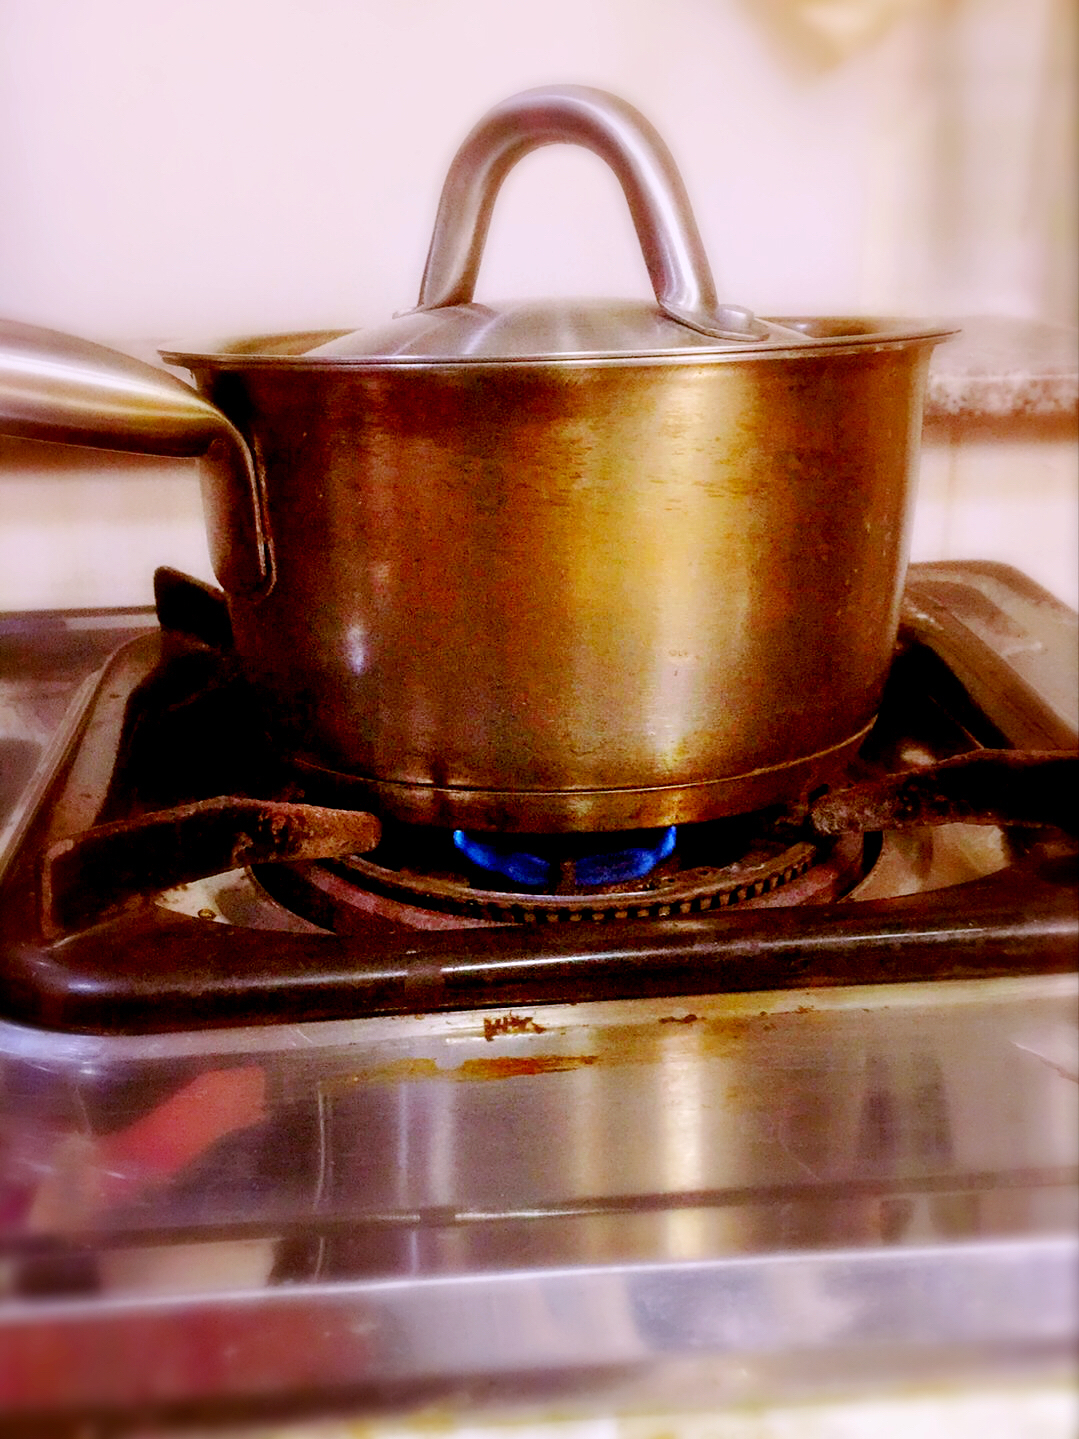 奇幻廚房丨 我們一起品嘗《冰與火之歌》中的熱香酒